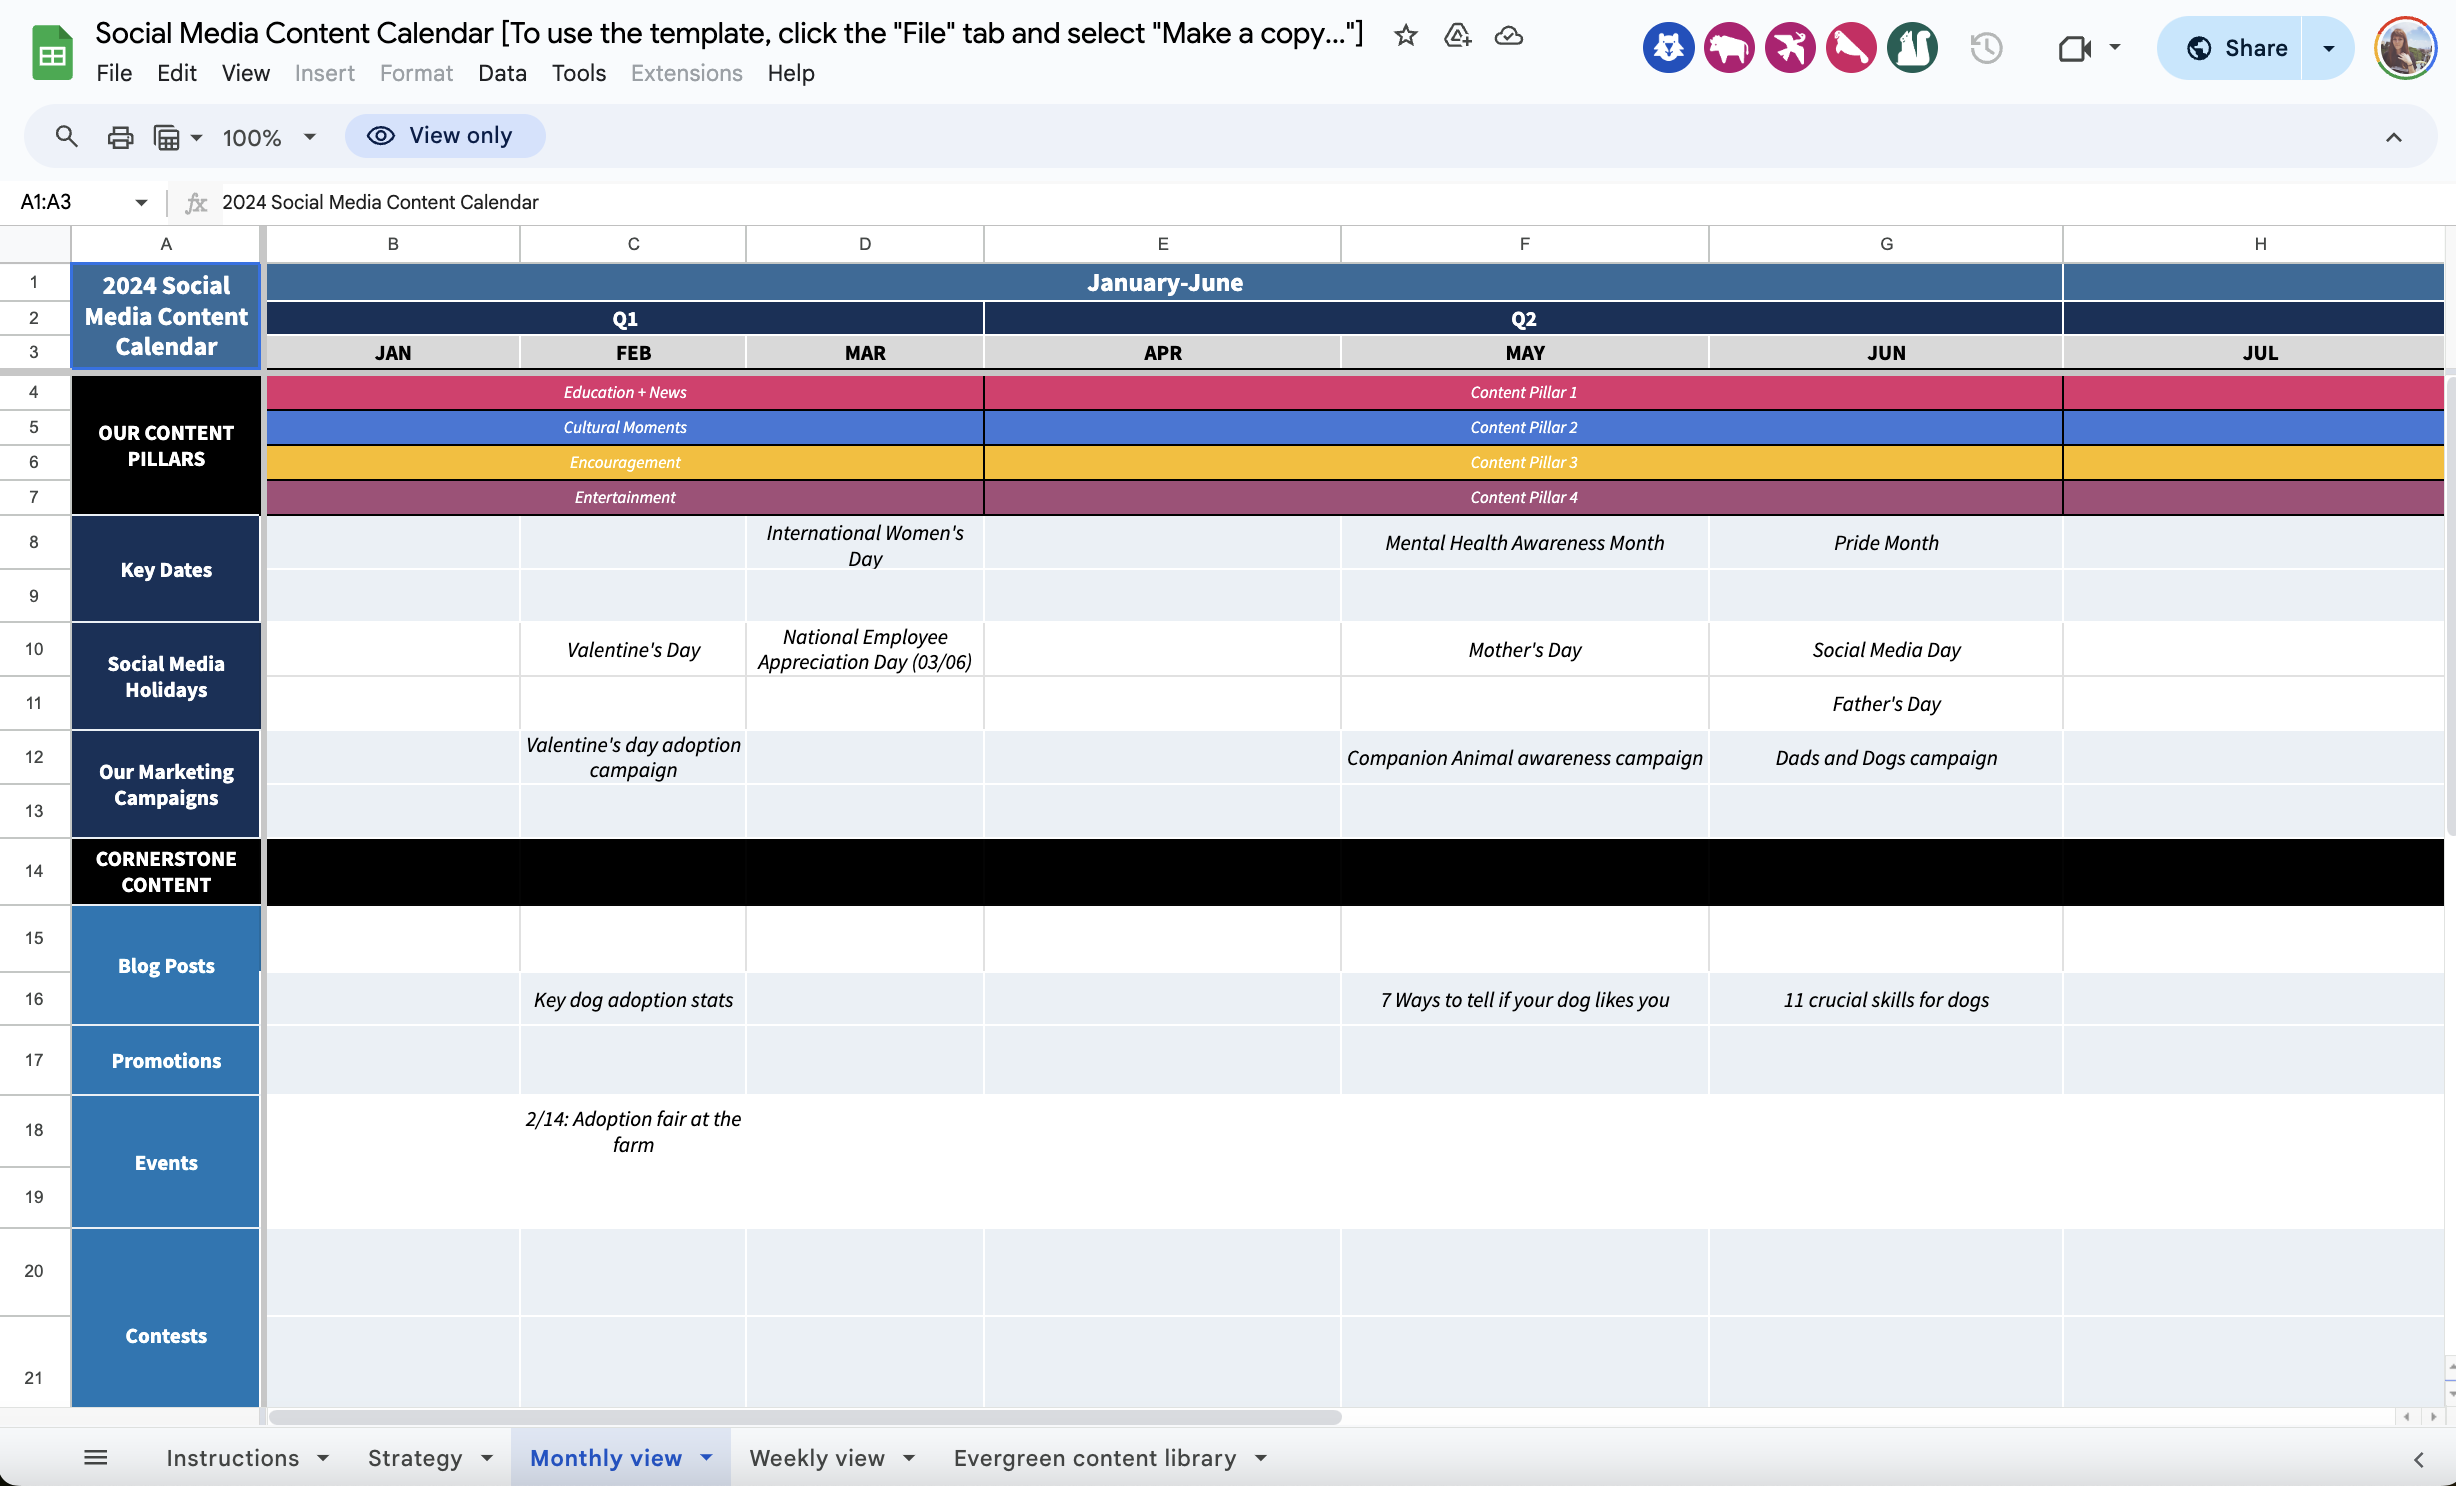 Captura de pantalla de la hoja de cálculo digital para la plantilla de calendario de contenidos en redes sociales de Hootsuite. El calendario está etiquetado por meses y semanas, con barras de colores que indican los temas de contenido previstos y las fechas de los distintos eventos sociales.